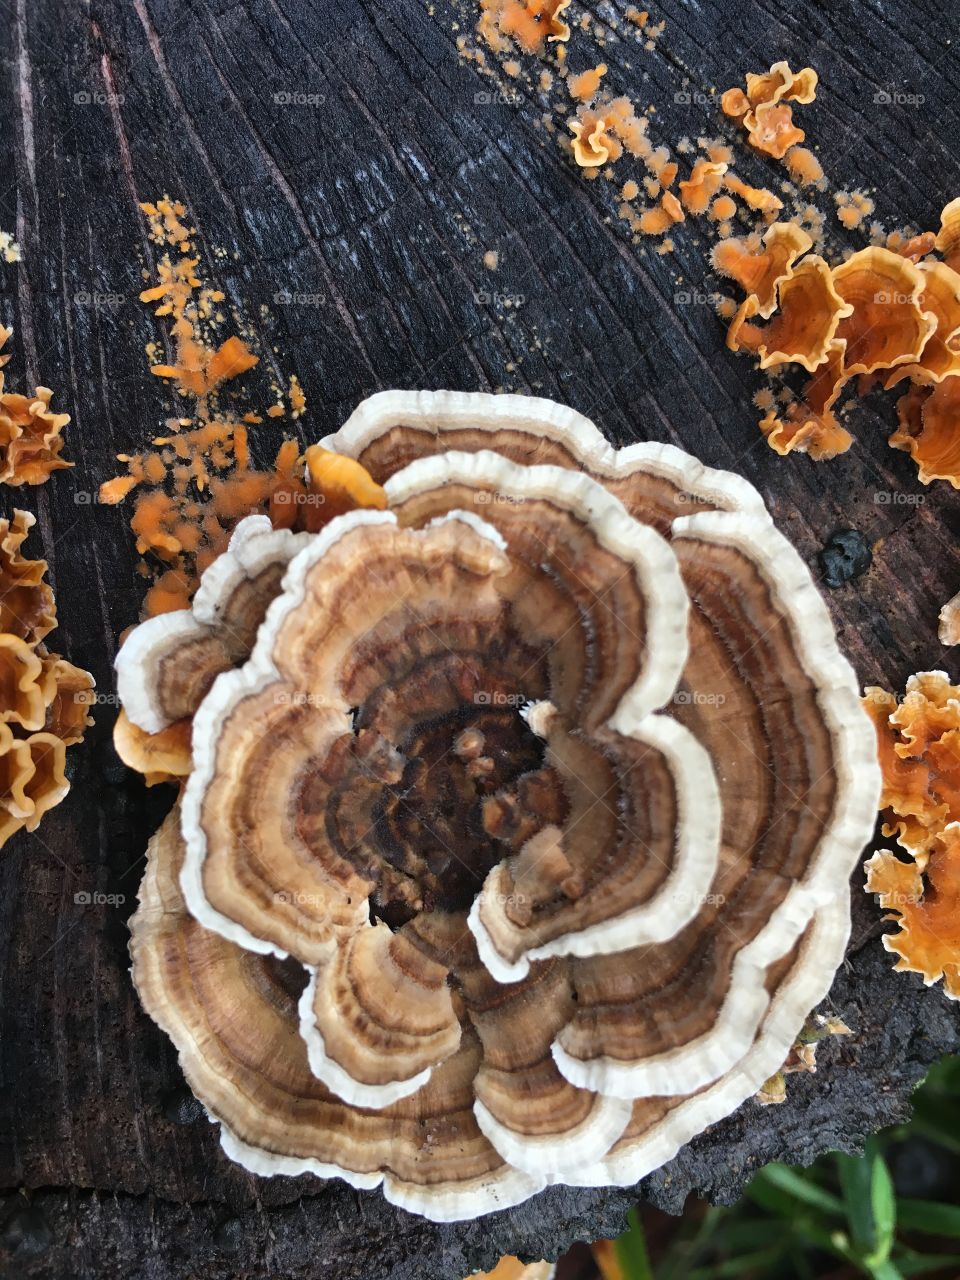 Flower mushroom